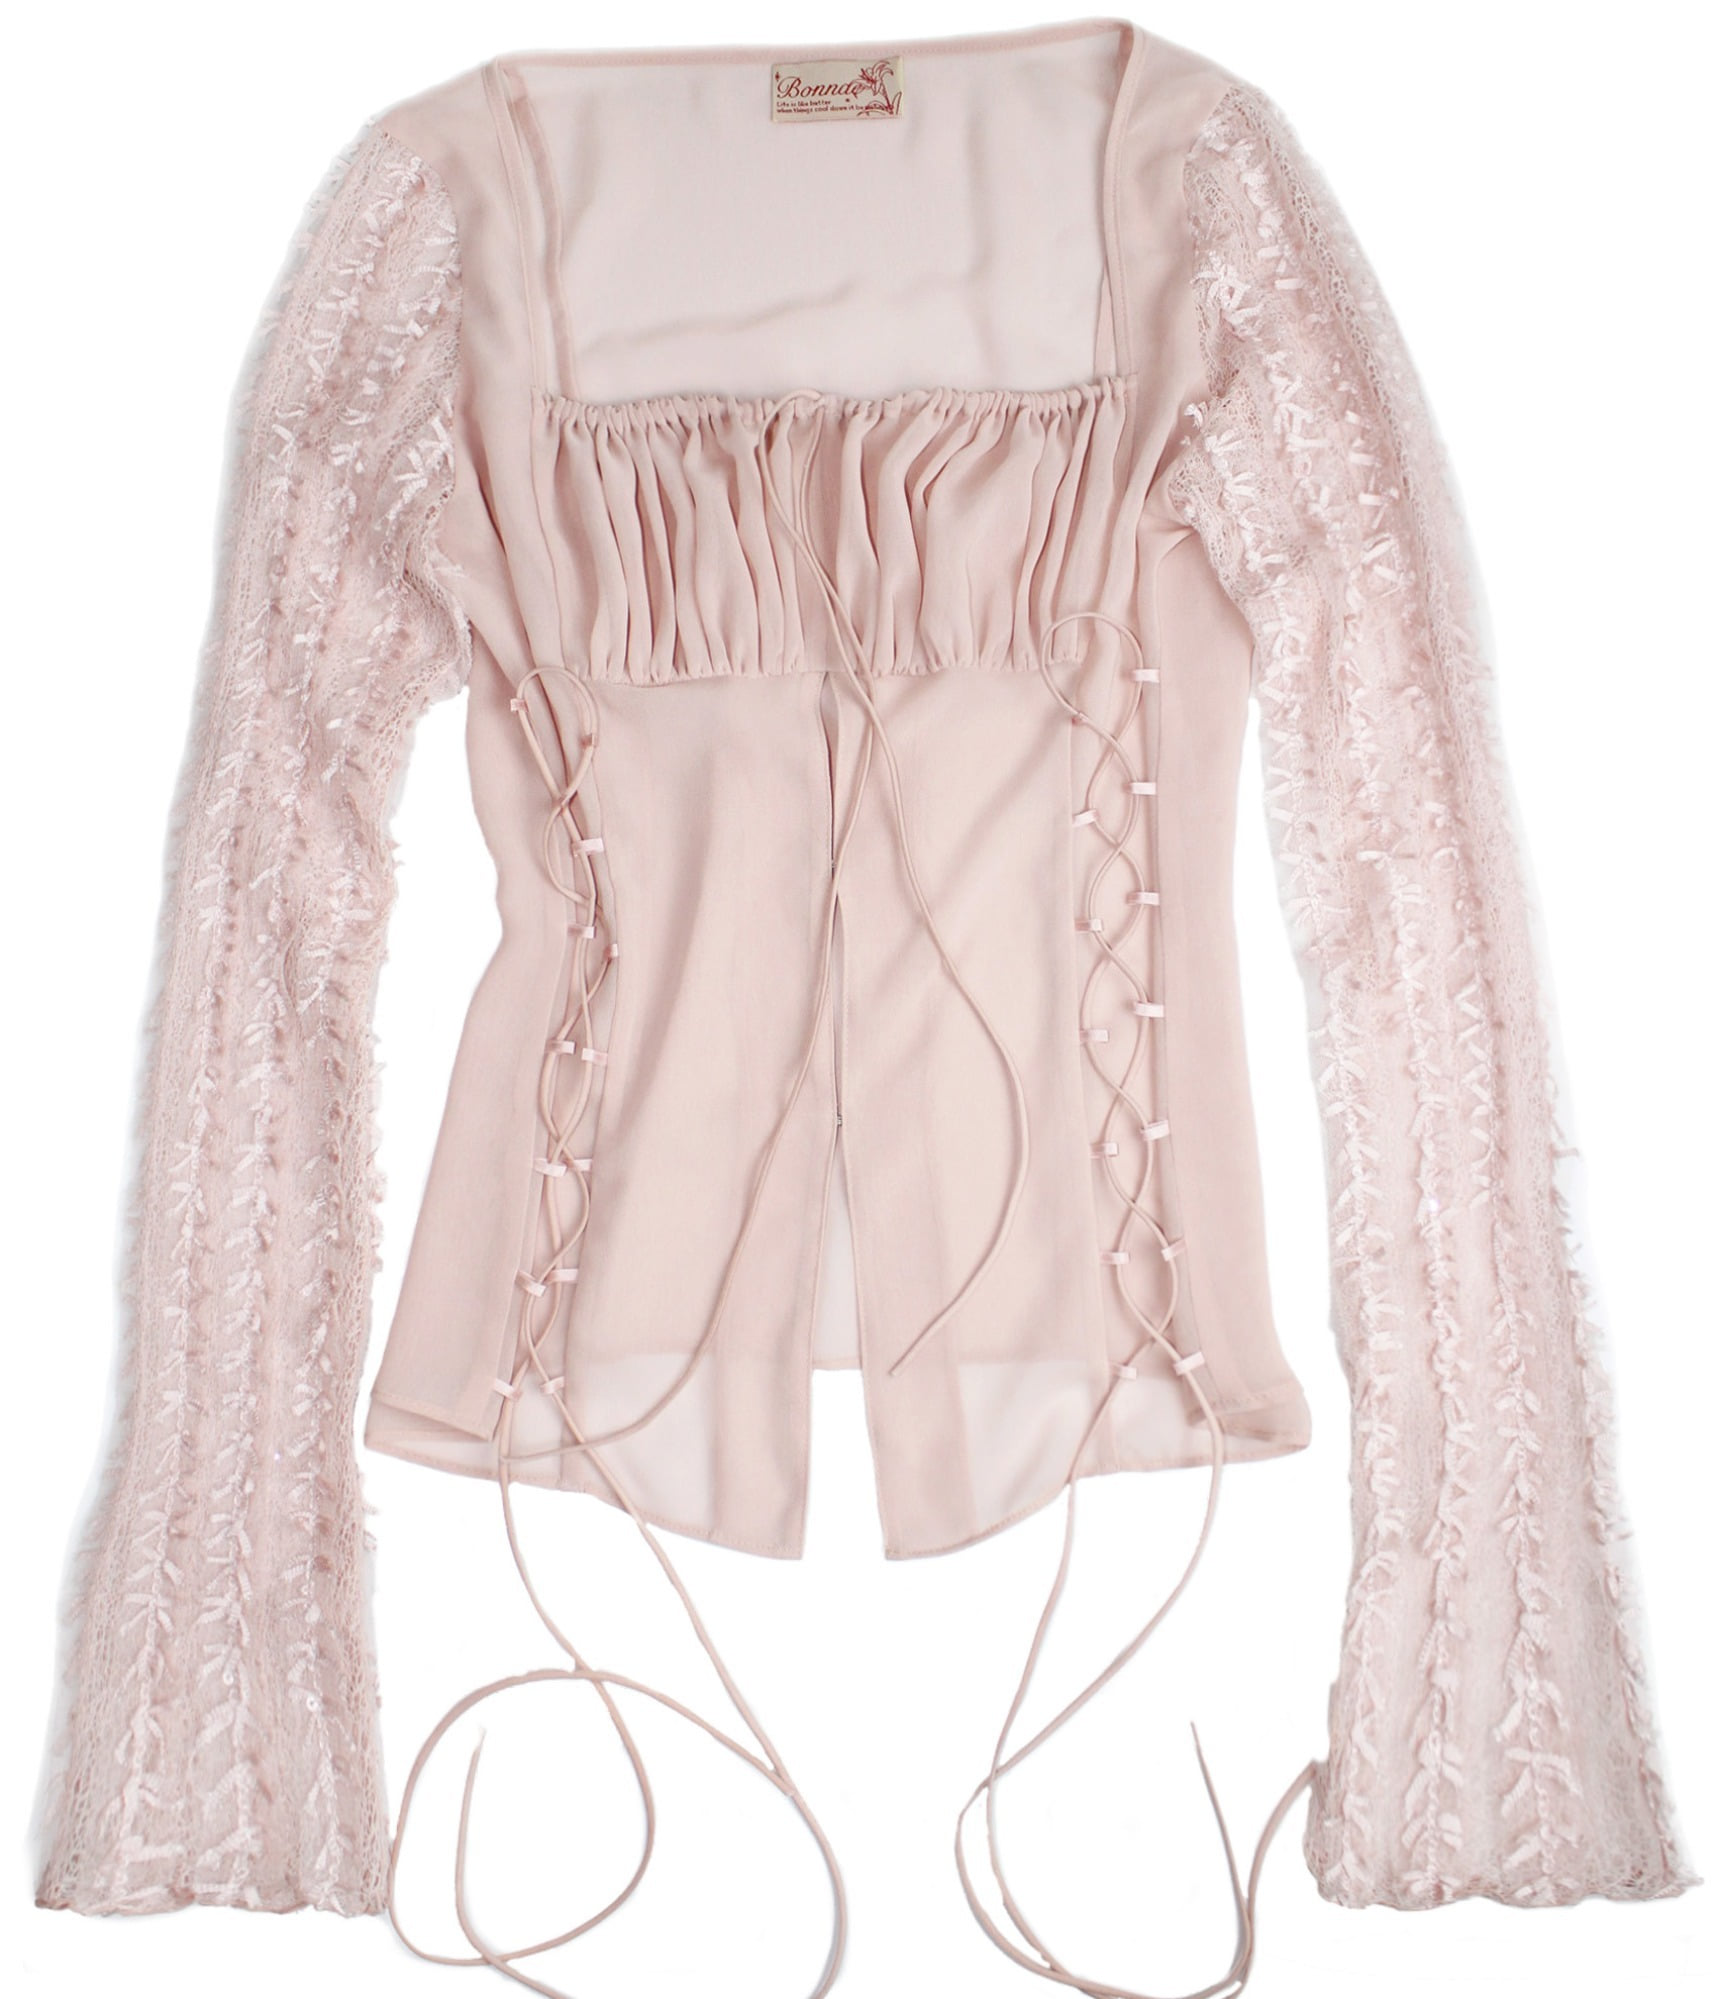 Lace up chiffon blouse (Pink)